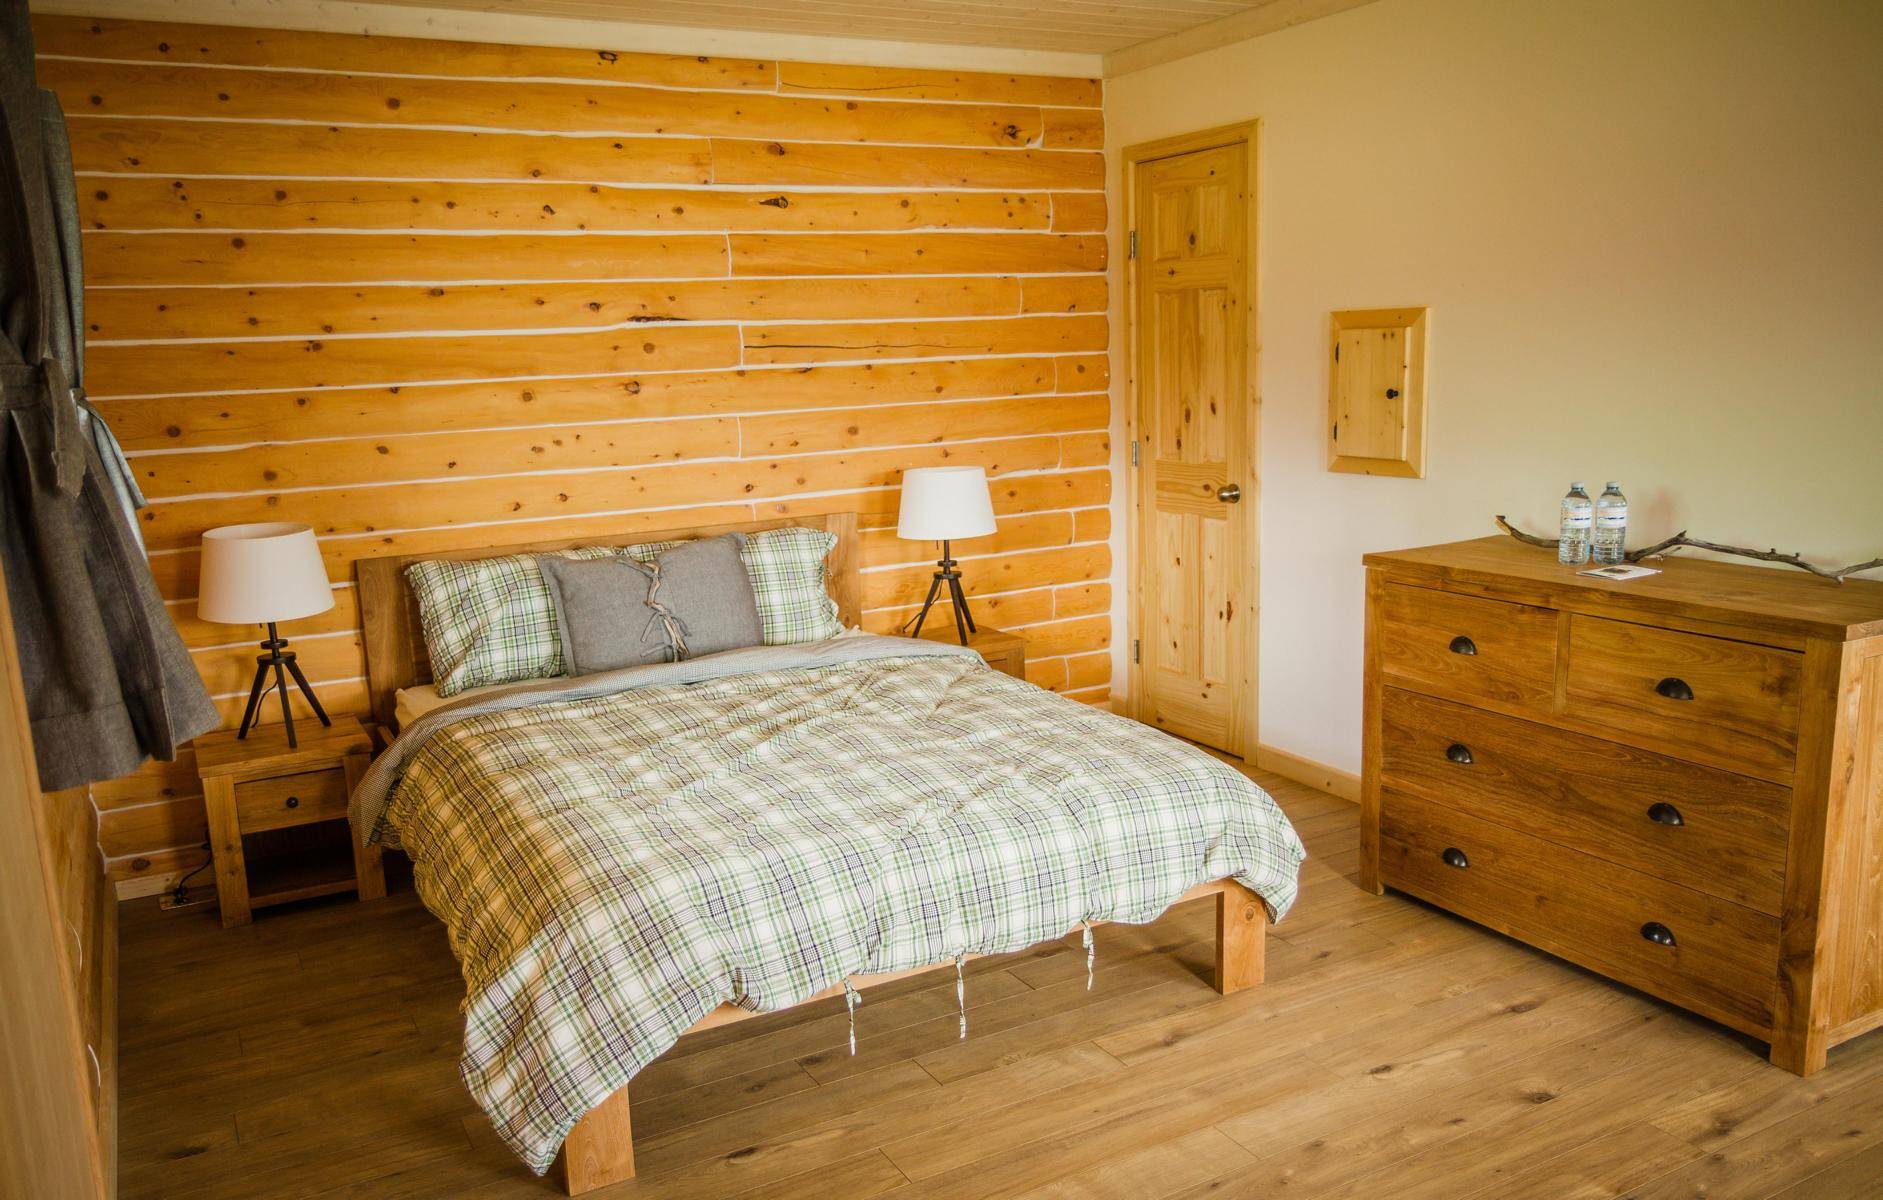 Bedroom at standard cabin, queensize bed